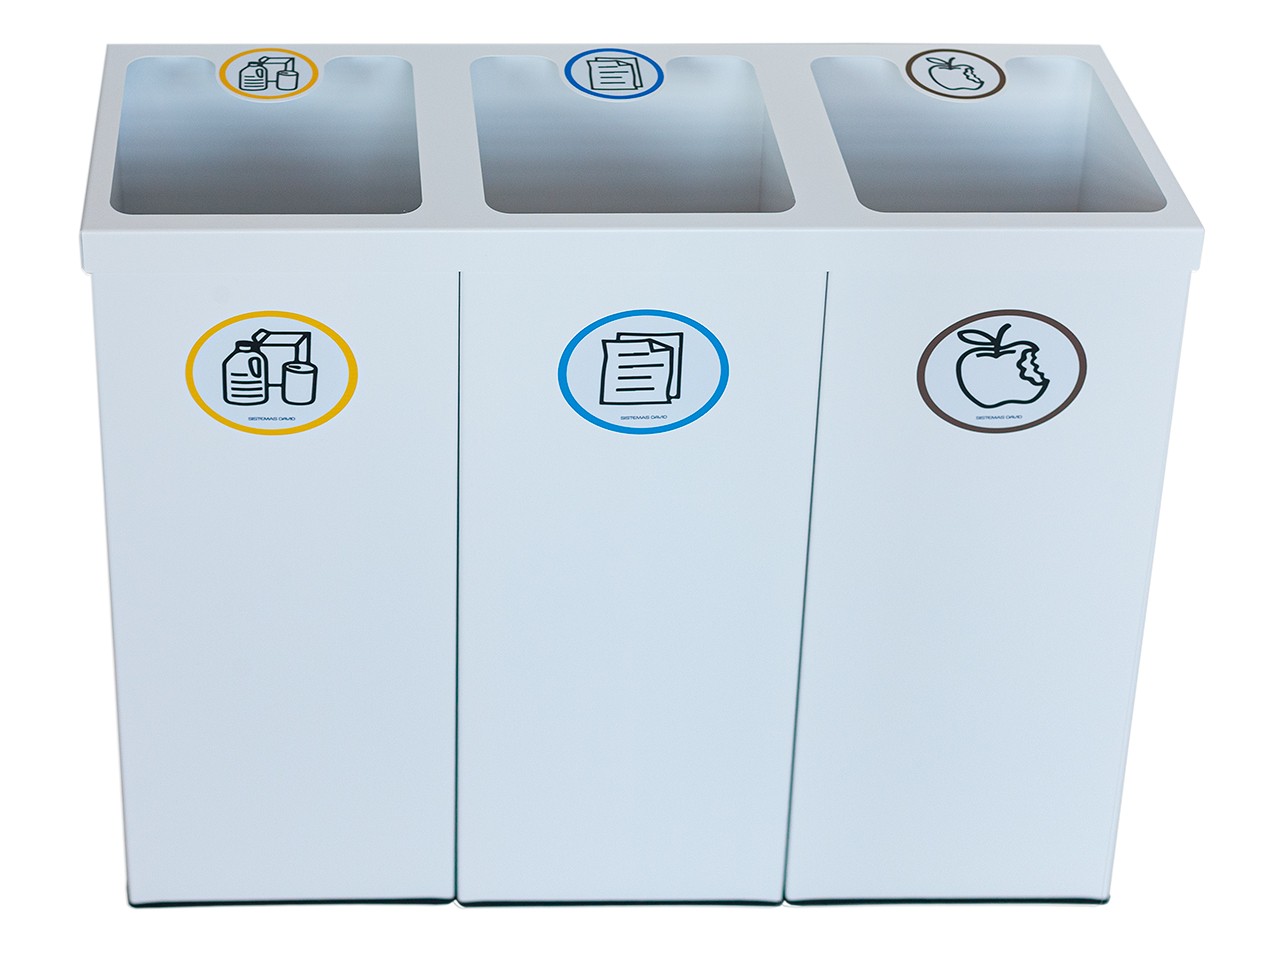 Papelera metálica blanca de reciclaje 3 residuos. Capacidad 132 litros  (Amarillo / Azul / Marrón) - Respira de compres al Ripollès